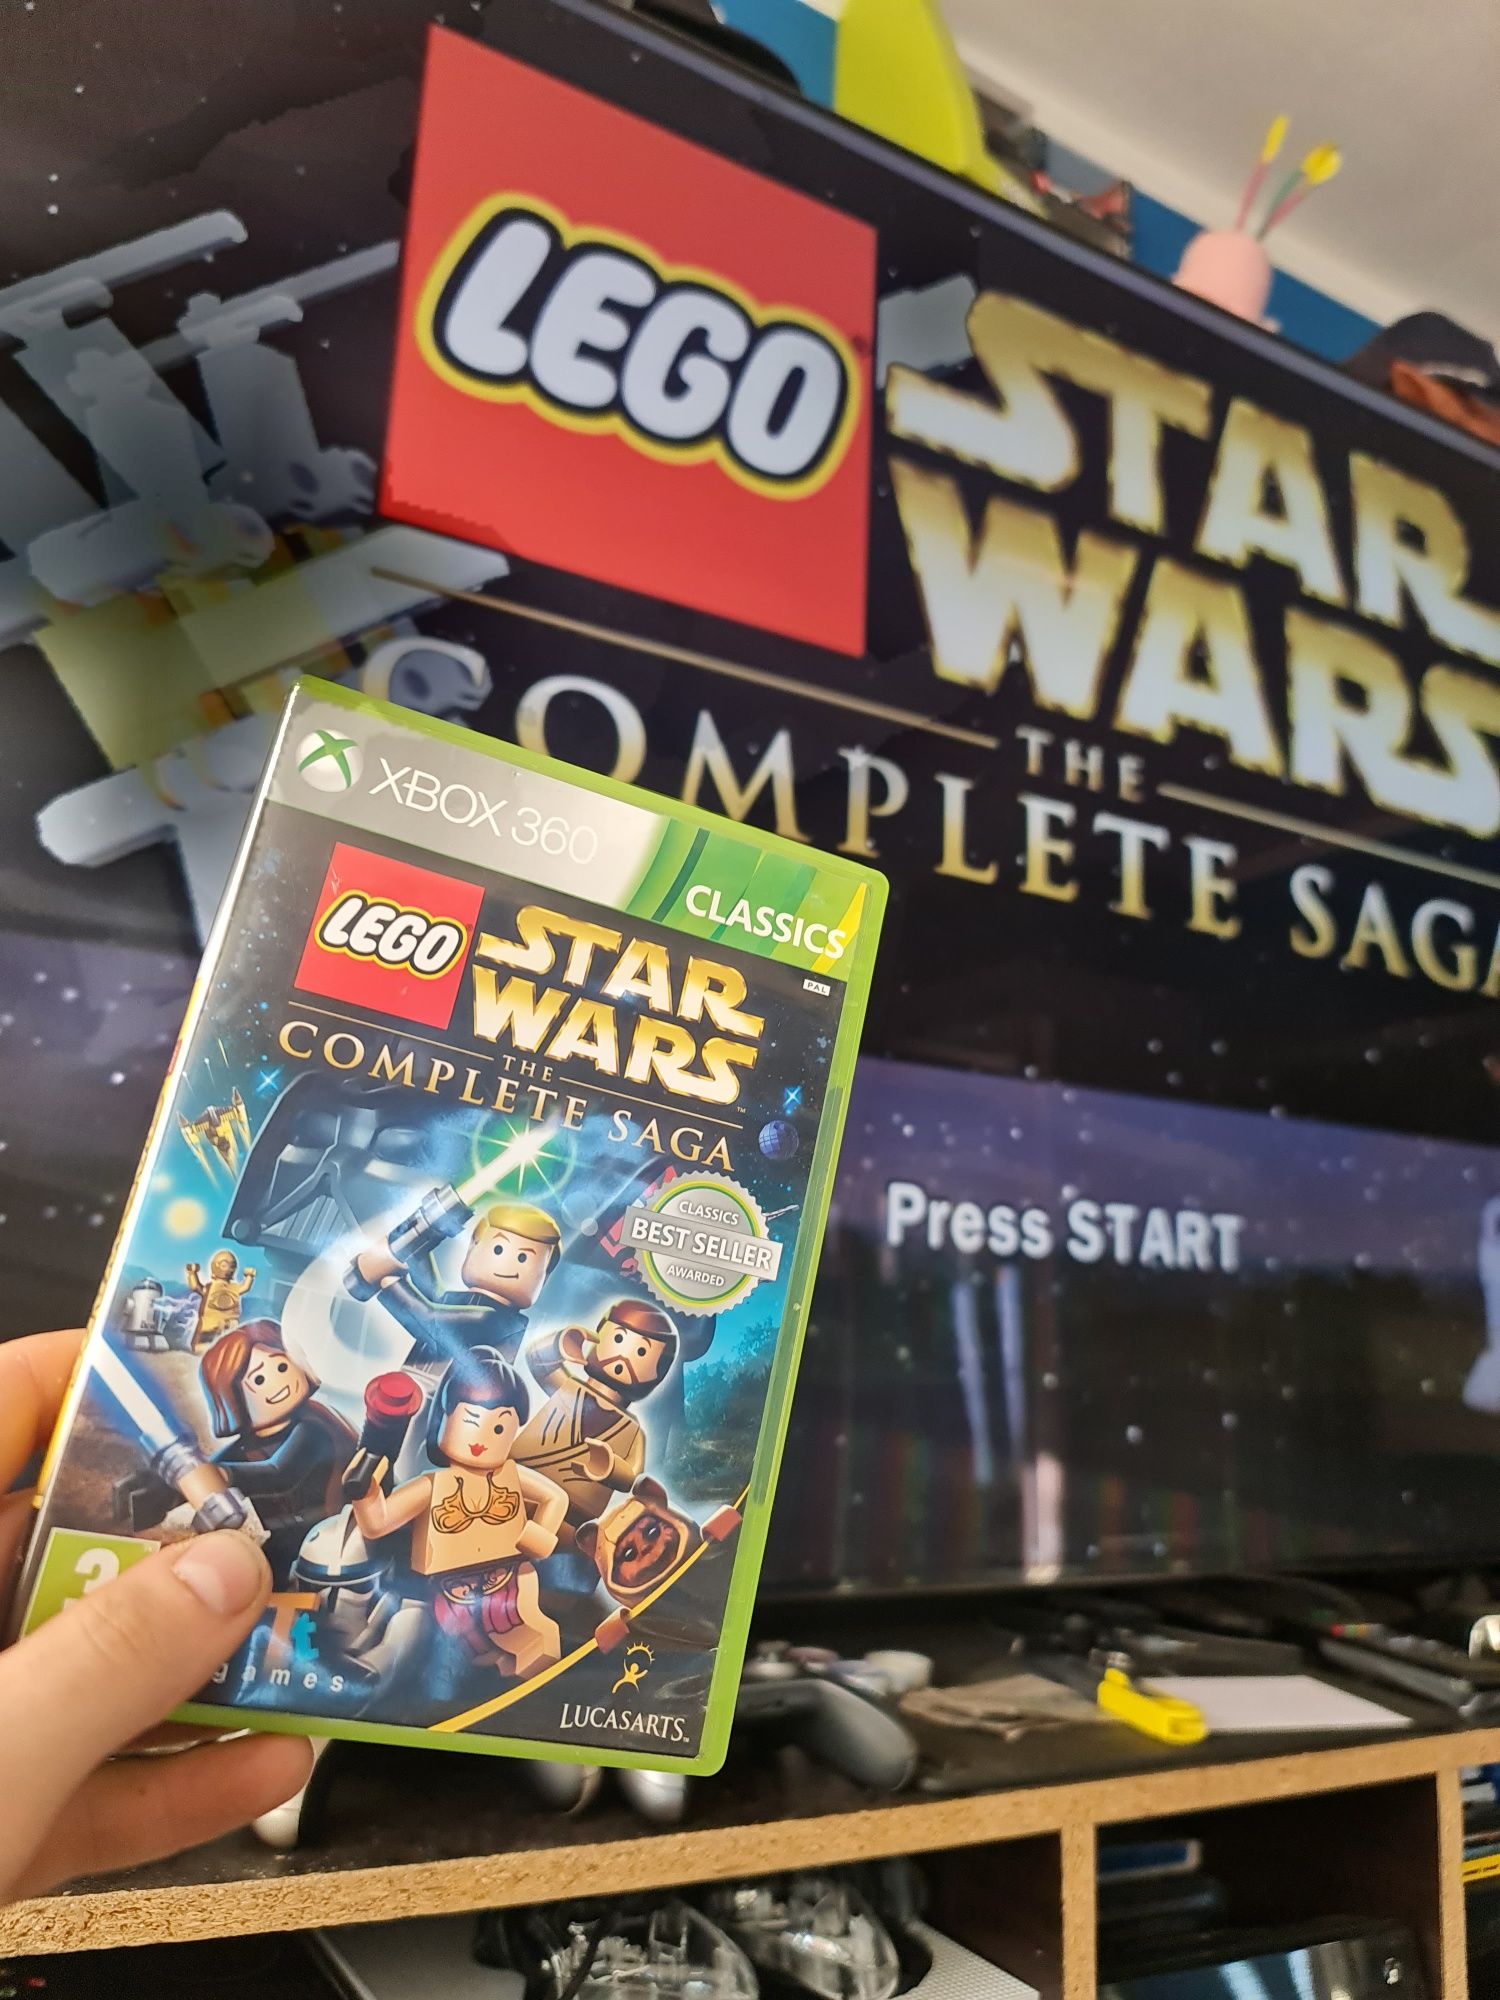 Lego Star Wars xbox 360 The Comlete Saga x360 gra dla dzieci